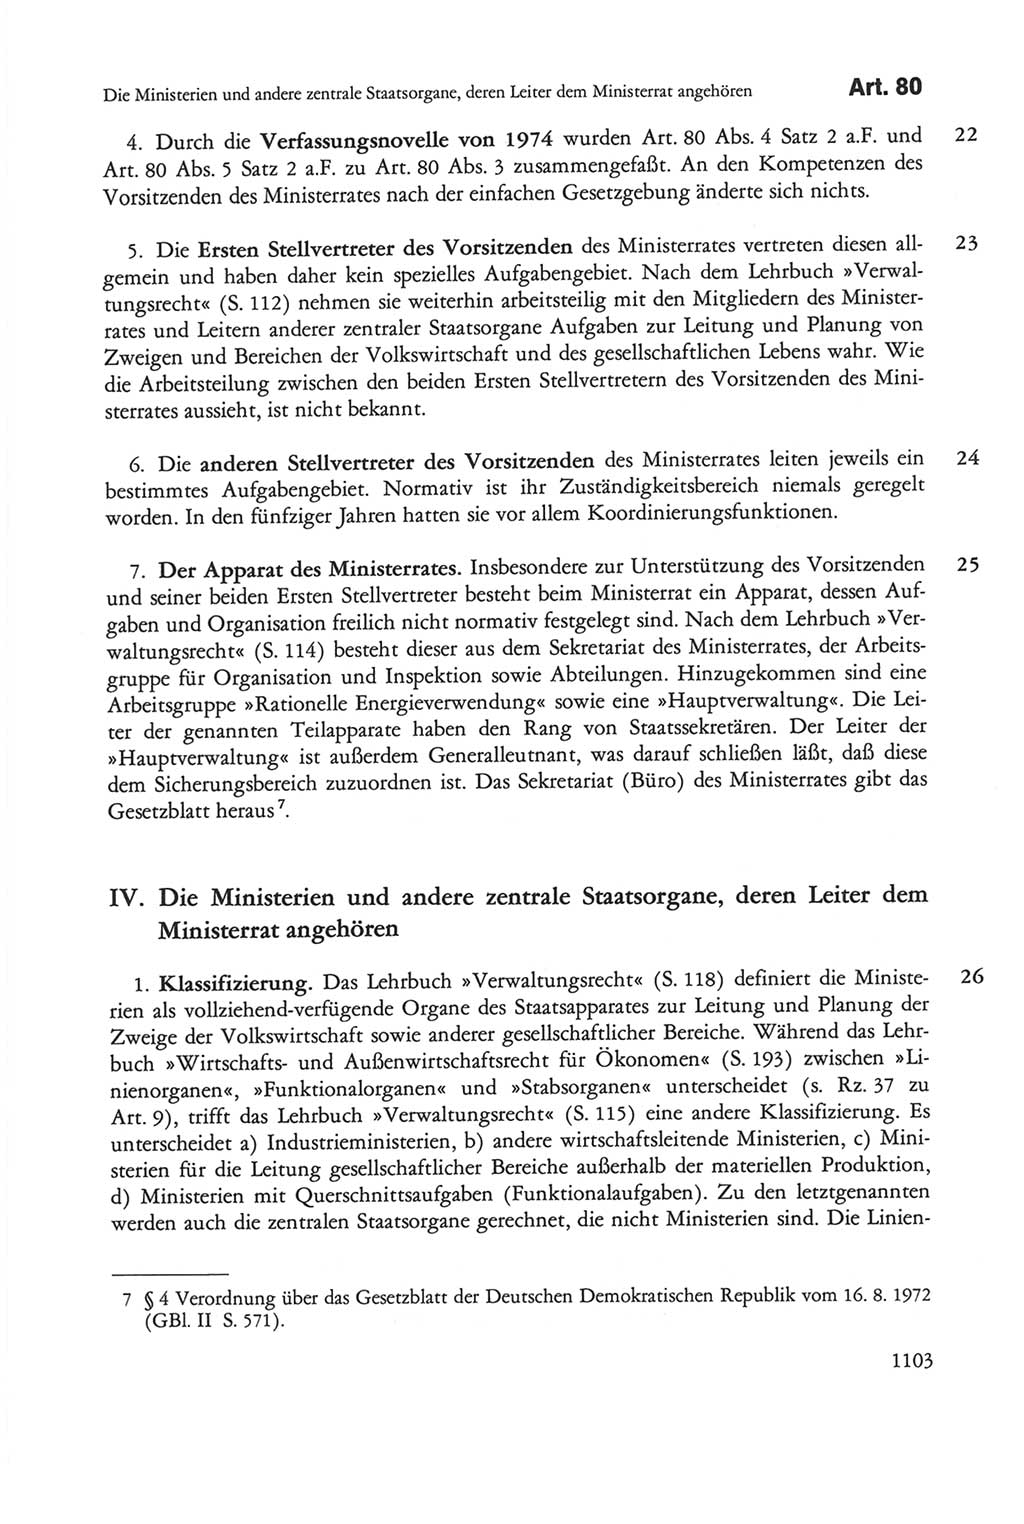 Die sozialistische Verfassung der Deutschen Demokratischen Republik (DDR), Kommentar 1982, Seite 1103 (Soz. Verf. DDR Komm. 1982, S. 1103)